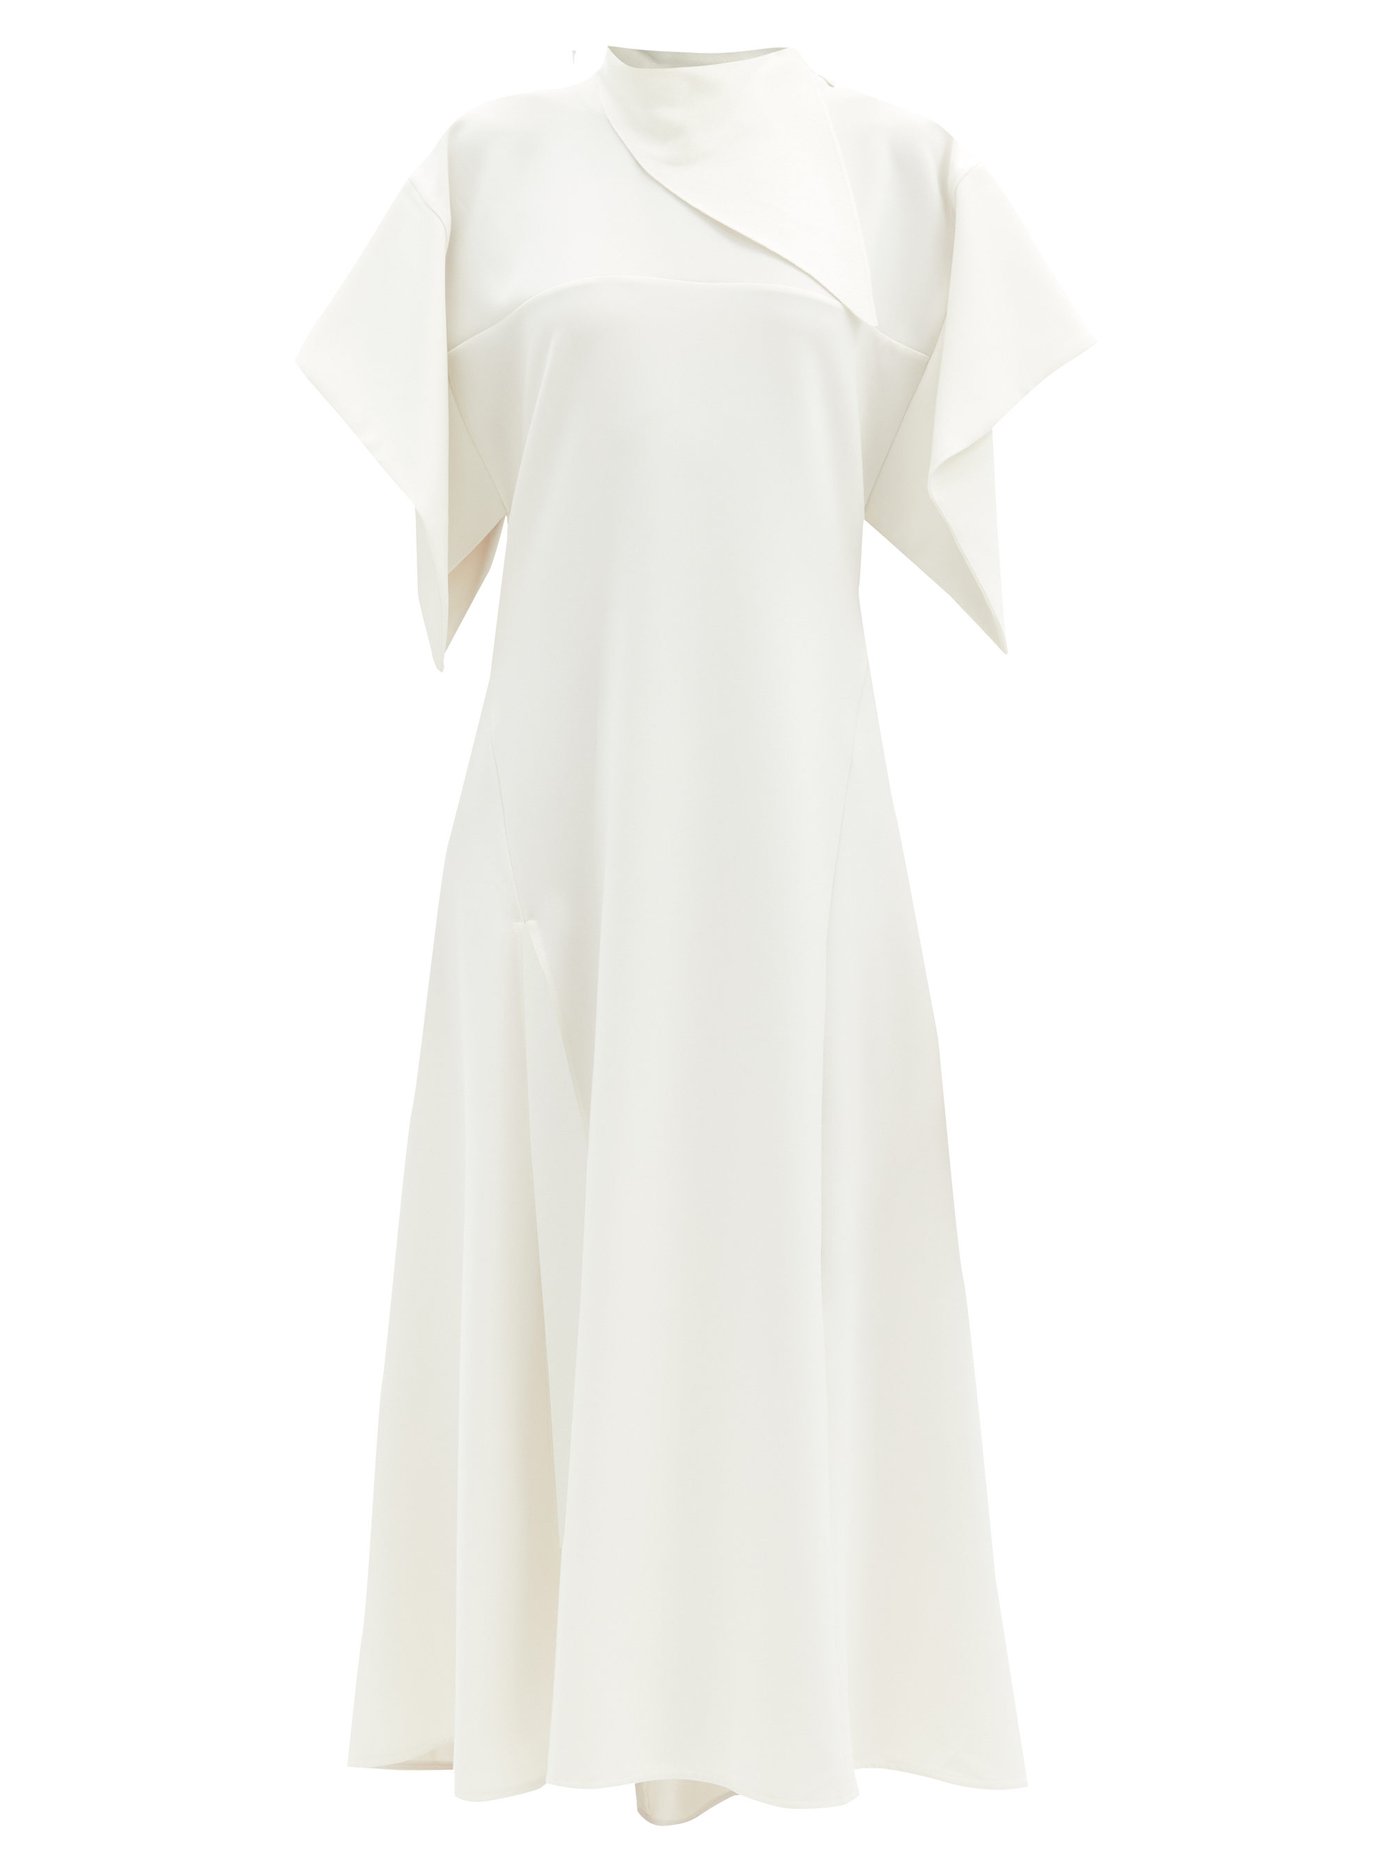 ellery white dress